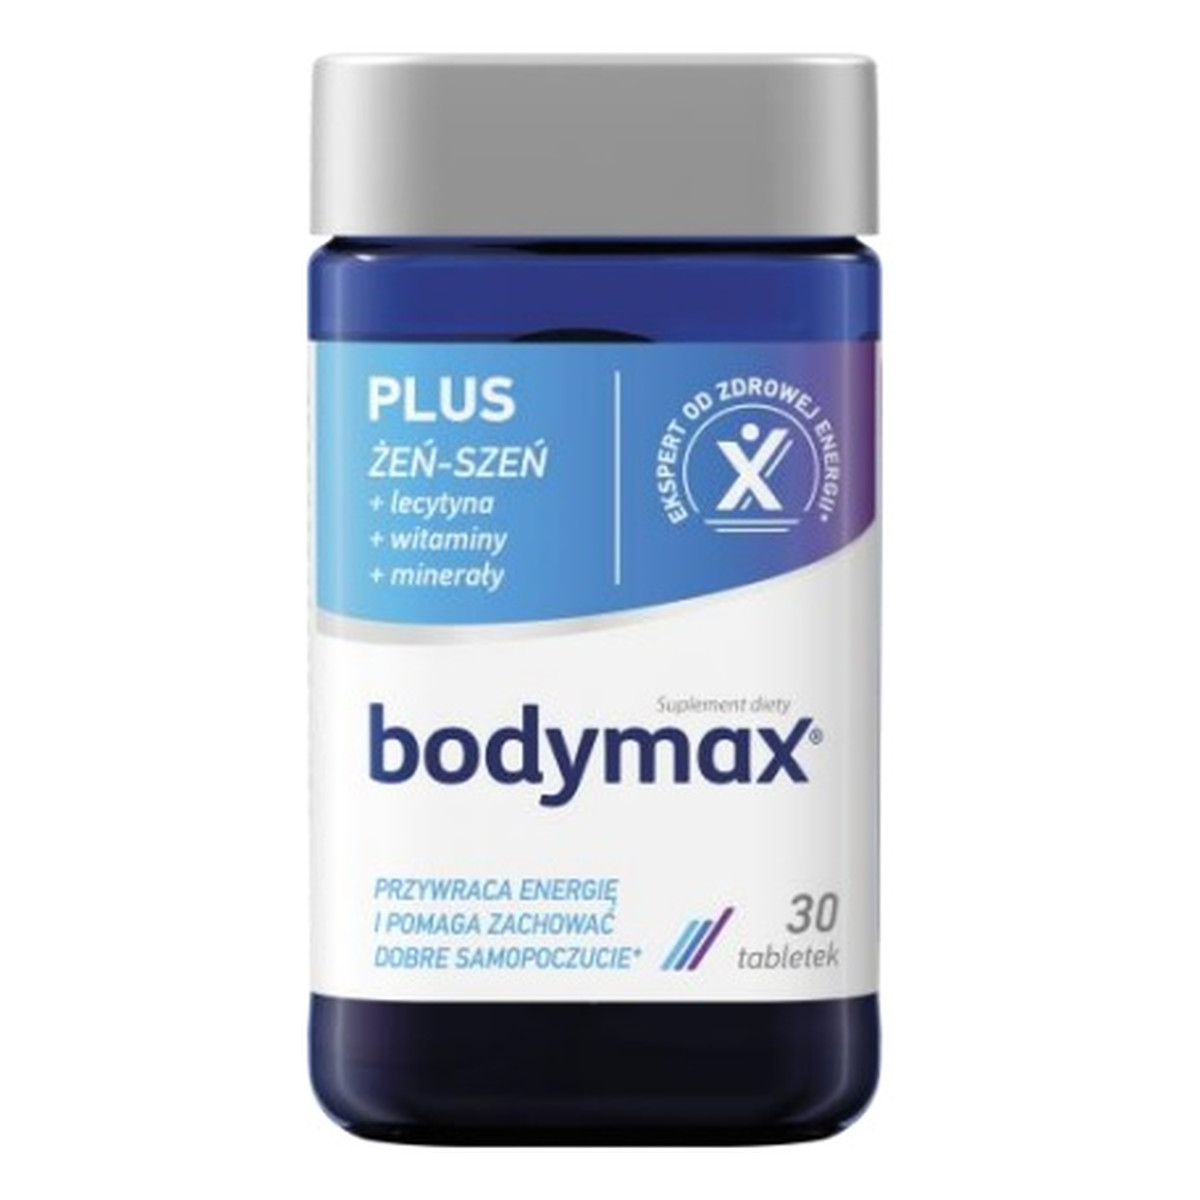 Bodymax Plus suplement diety 30 tabletek